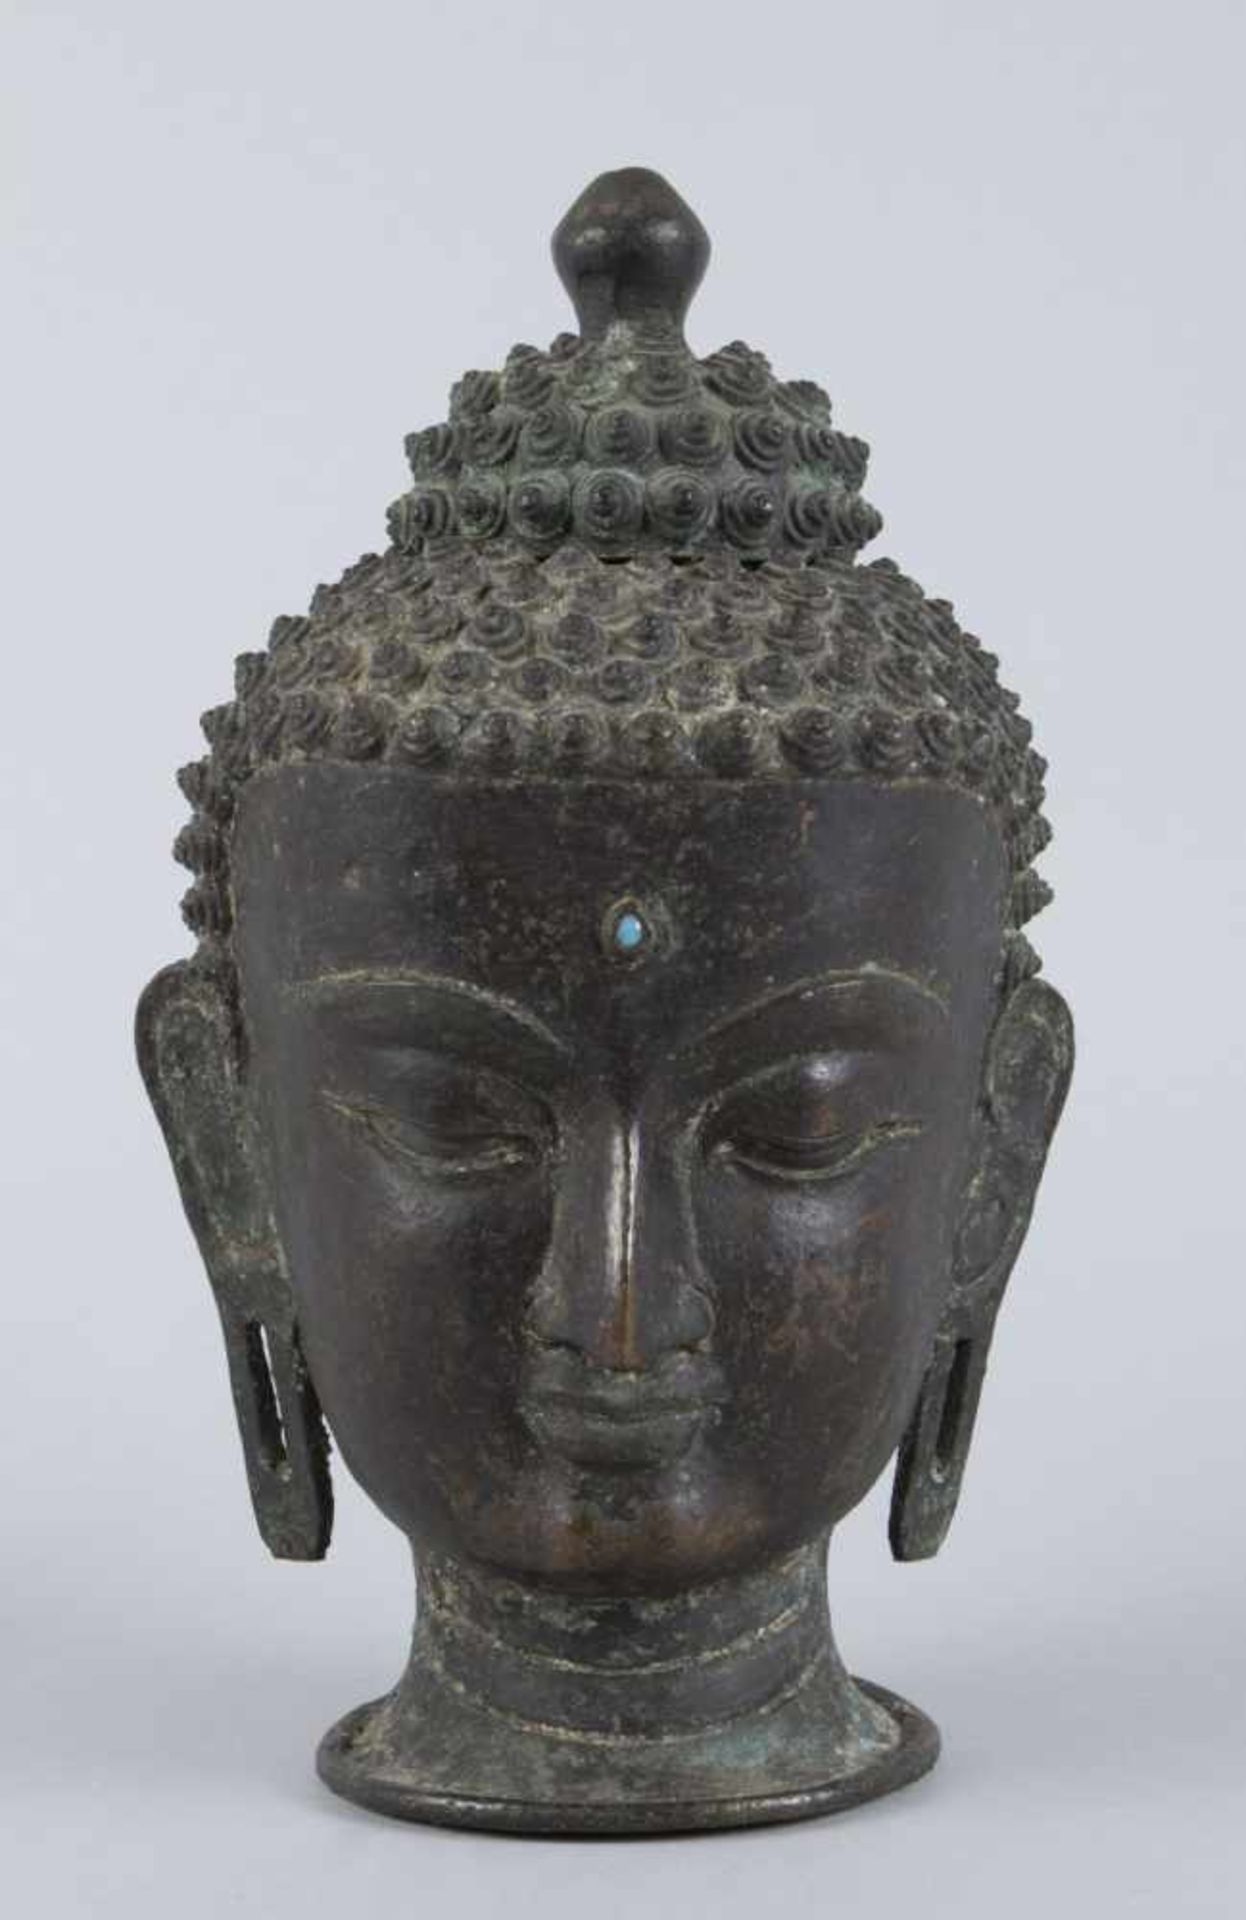 Buddhakopf, 2-teiligBronze. Frisur mit spitzen, schneckenförmigen Locken. Der Kopf ist nicht aus